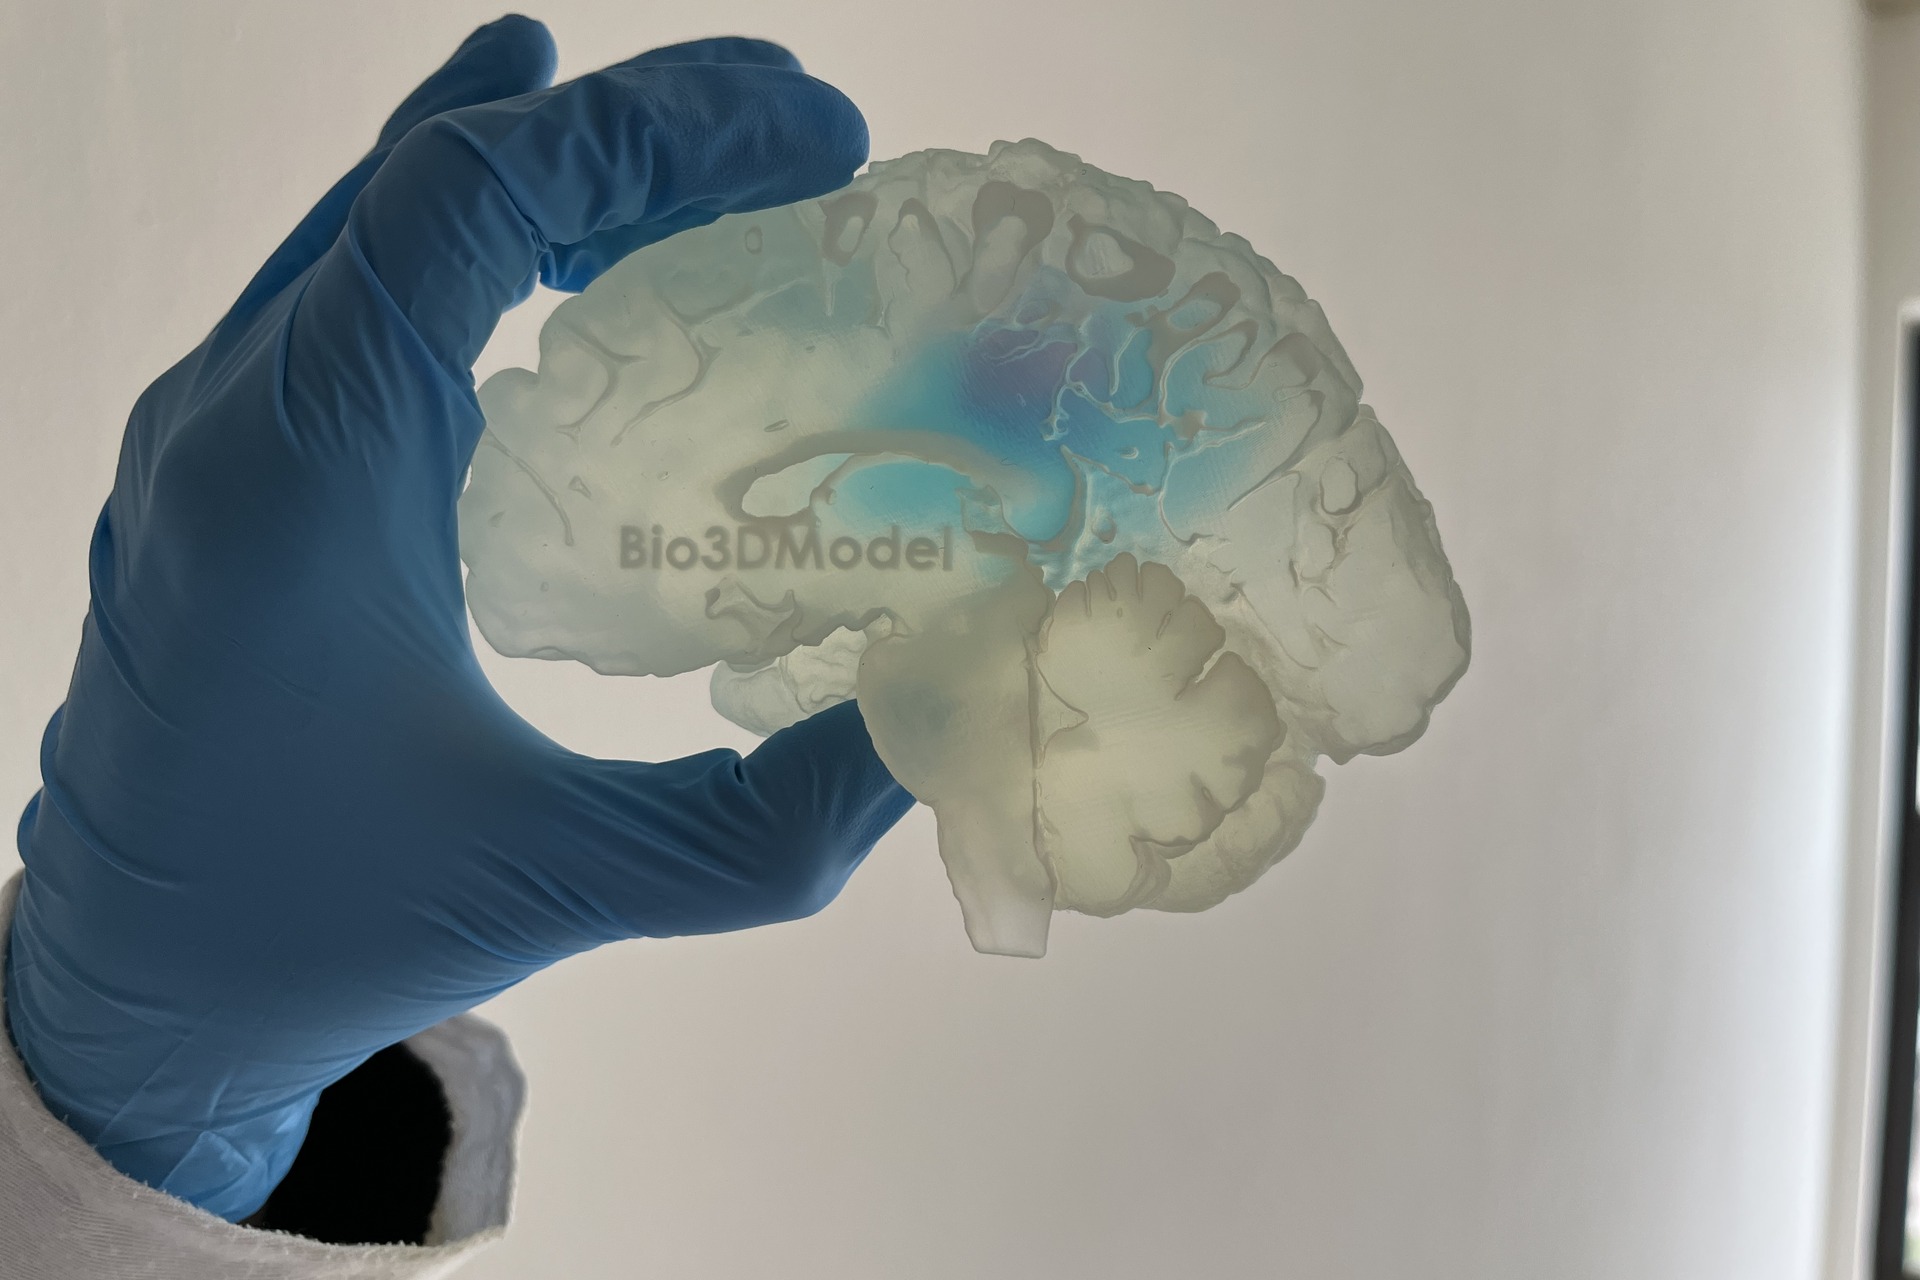 Cilvēka smadzenes: metastāžu skarto smadzeņu reprodukcija, ko 3D izdrukā Itālijas uzņēmums Bio3DModel